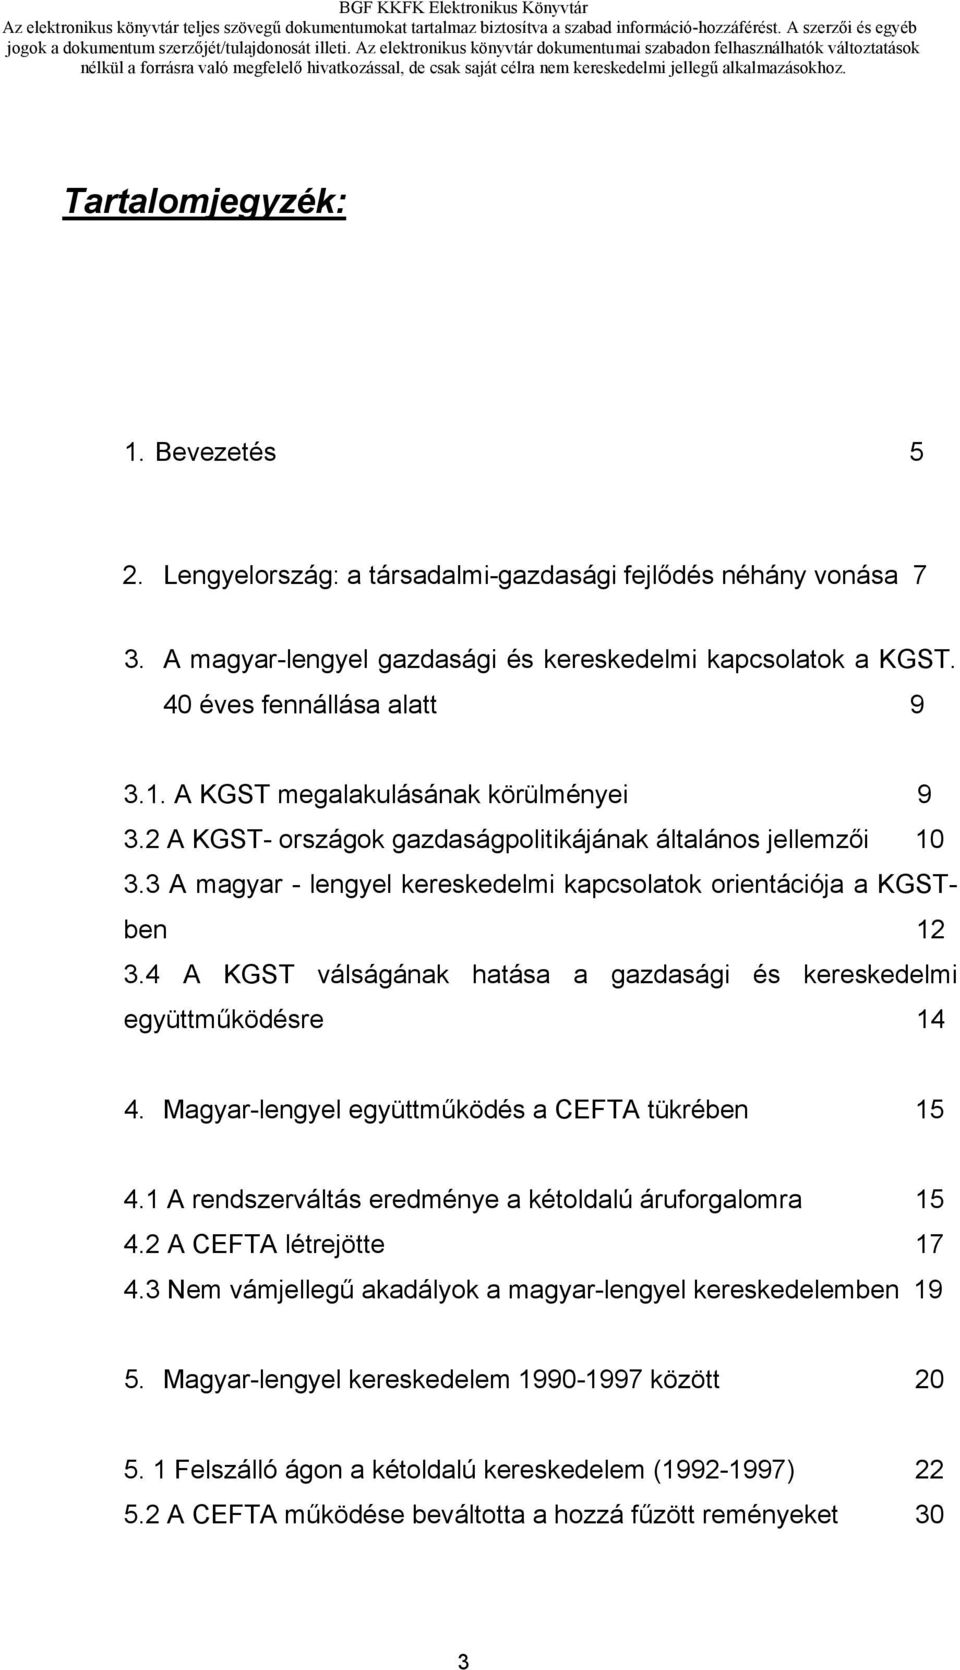 4 A KGST válságának hatása a gazdasági és kereskedelmi együttműködésre 14 4. Magyar-lengyel együttműködés a CEFTA tükrében 15 4.1 A rendszerváltás eredménye a kétoldalú áruforgalomra 15 4.